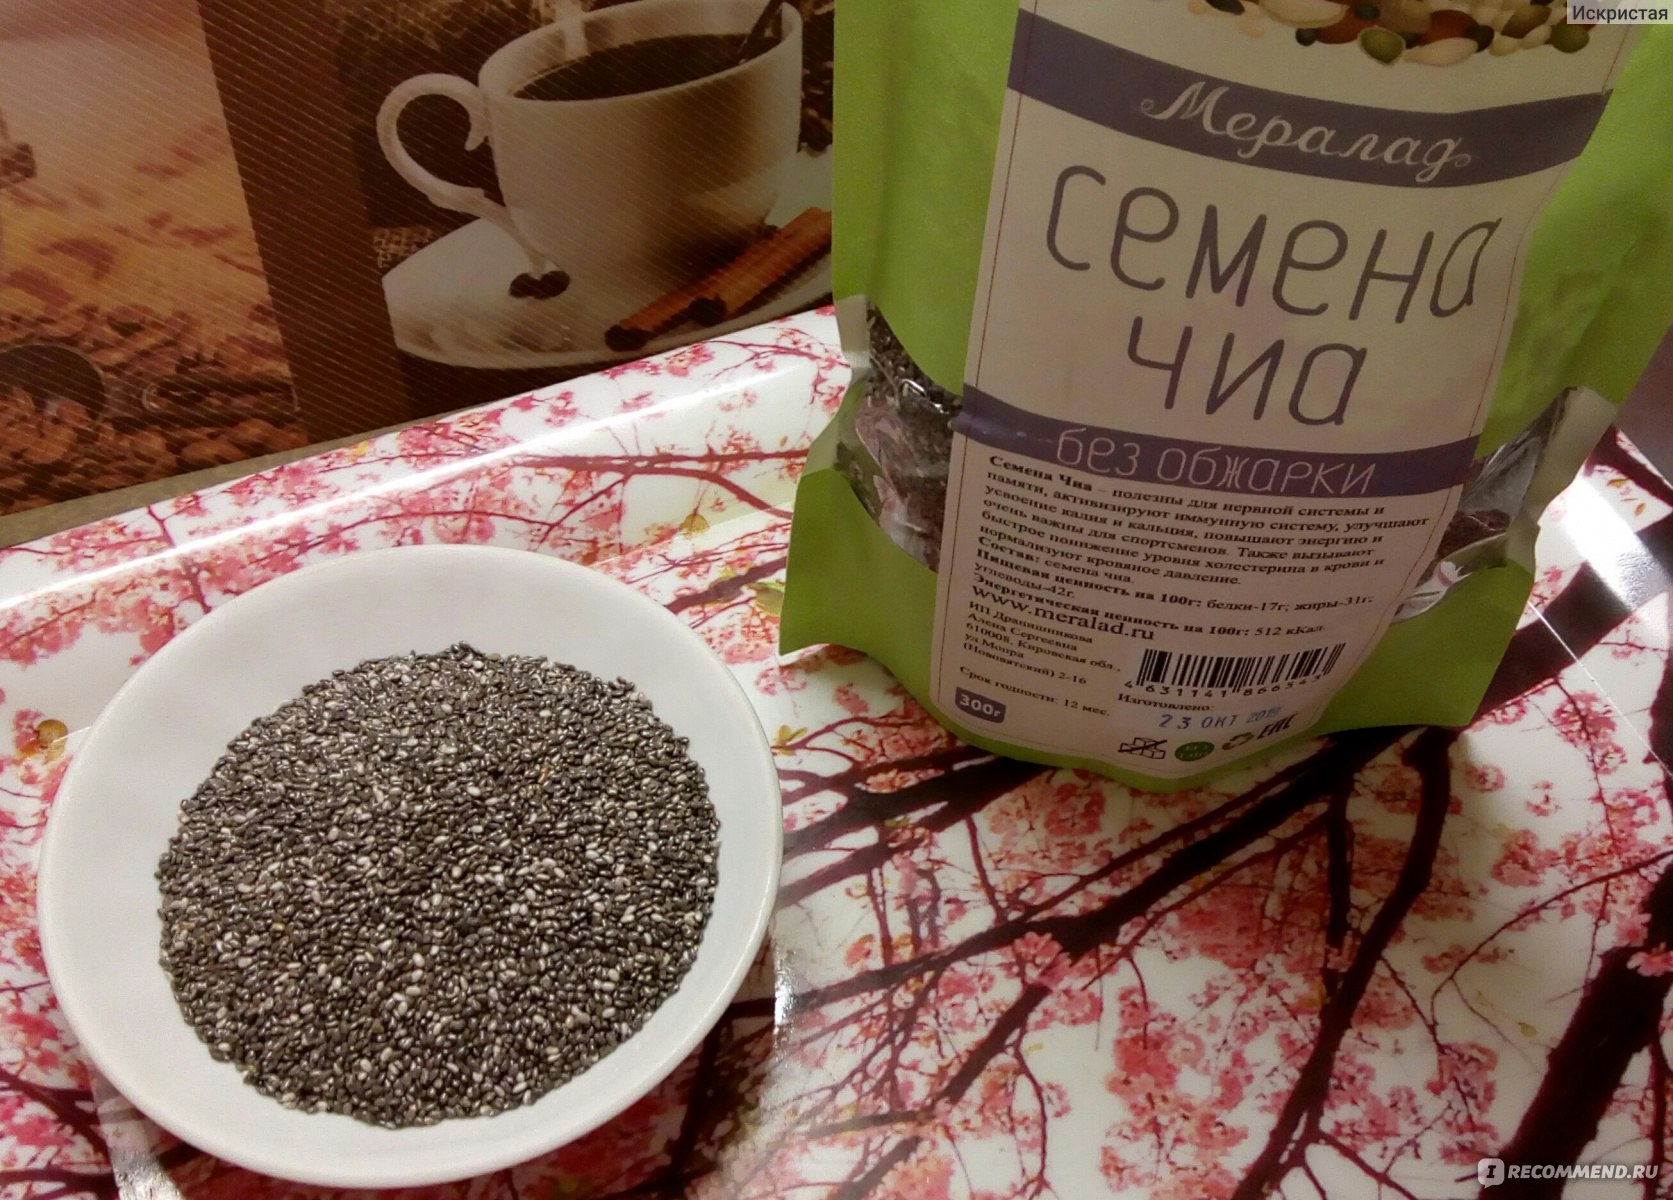 Семена Чиа Где Купить Екатеринбург